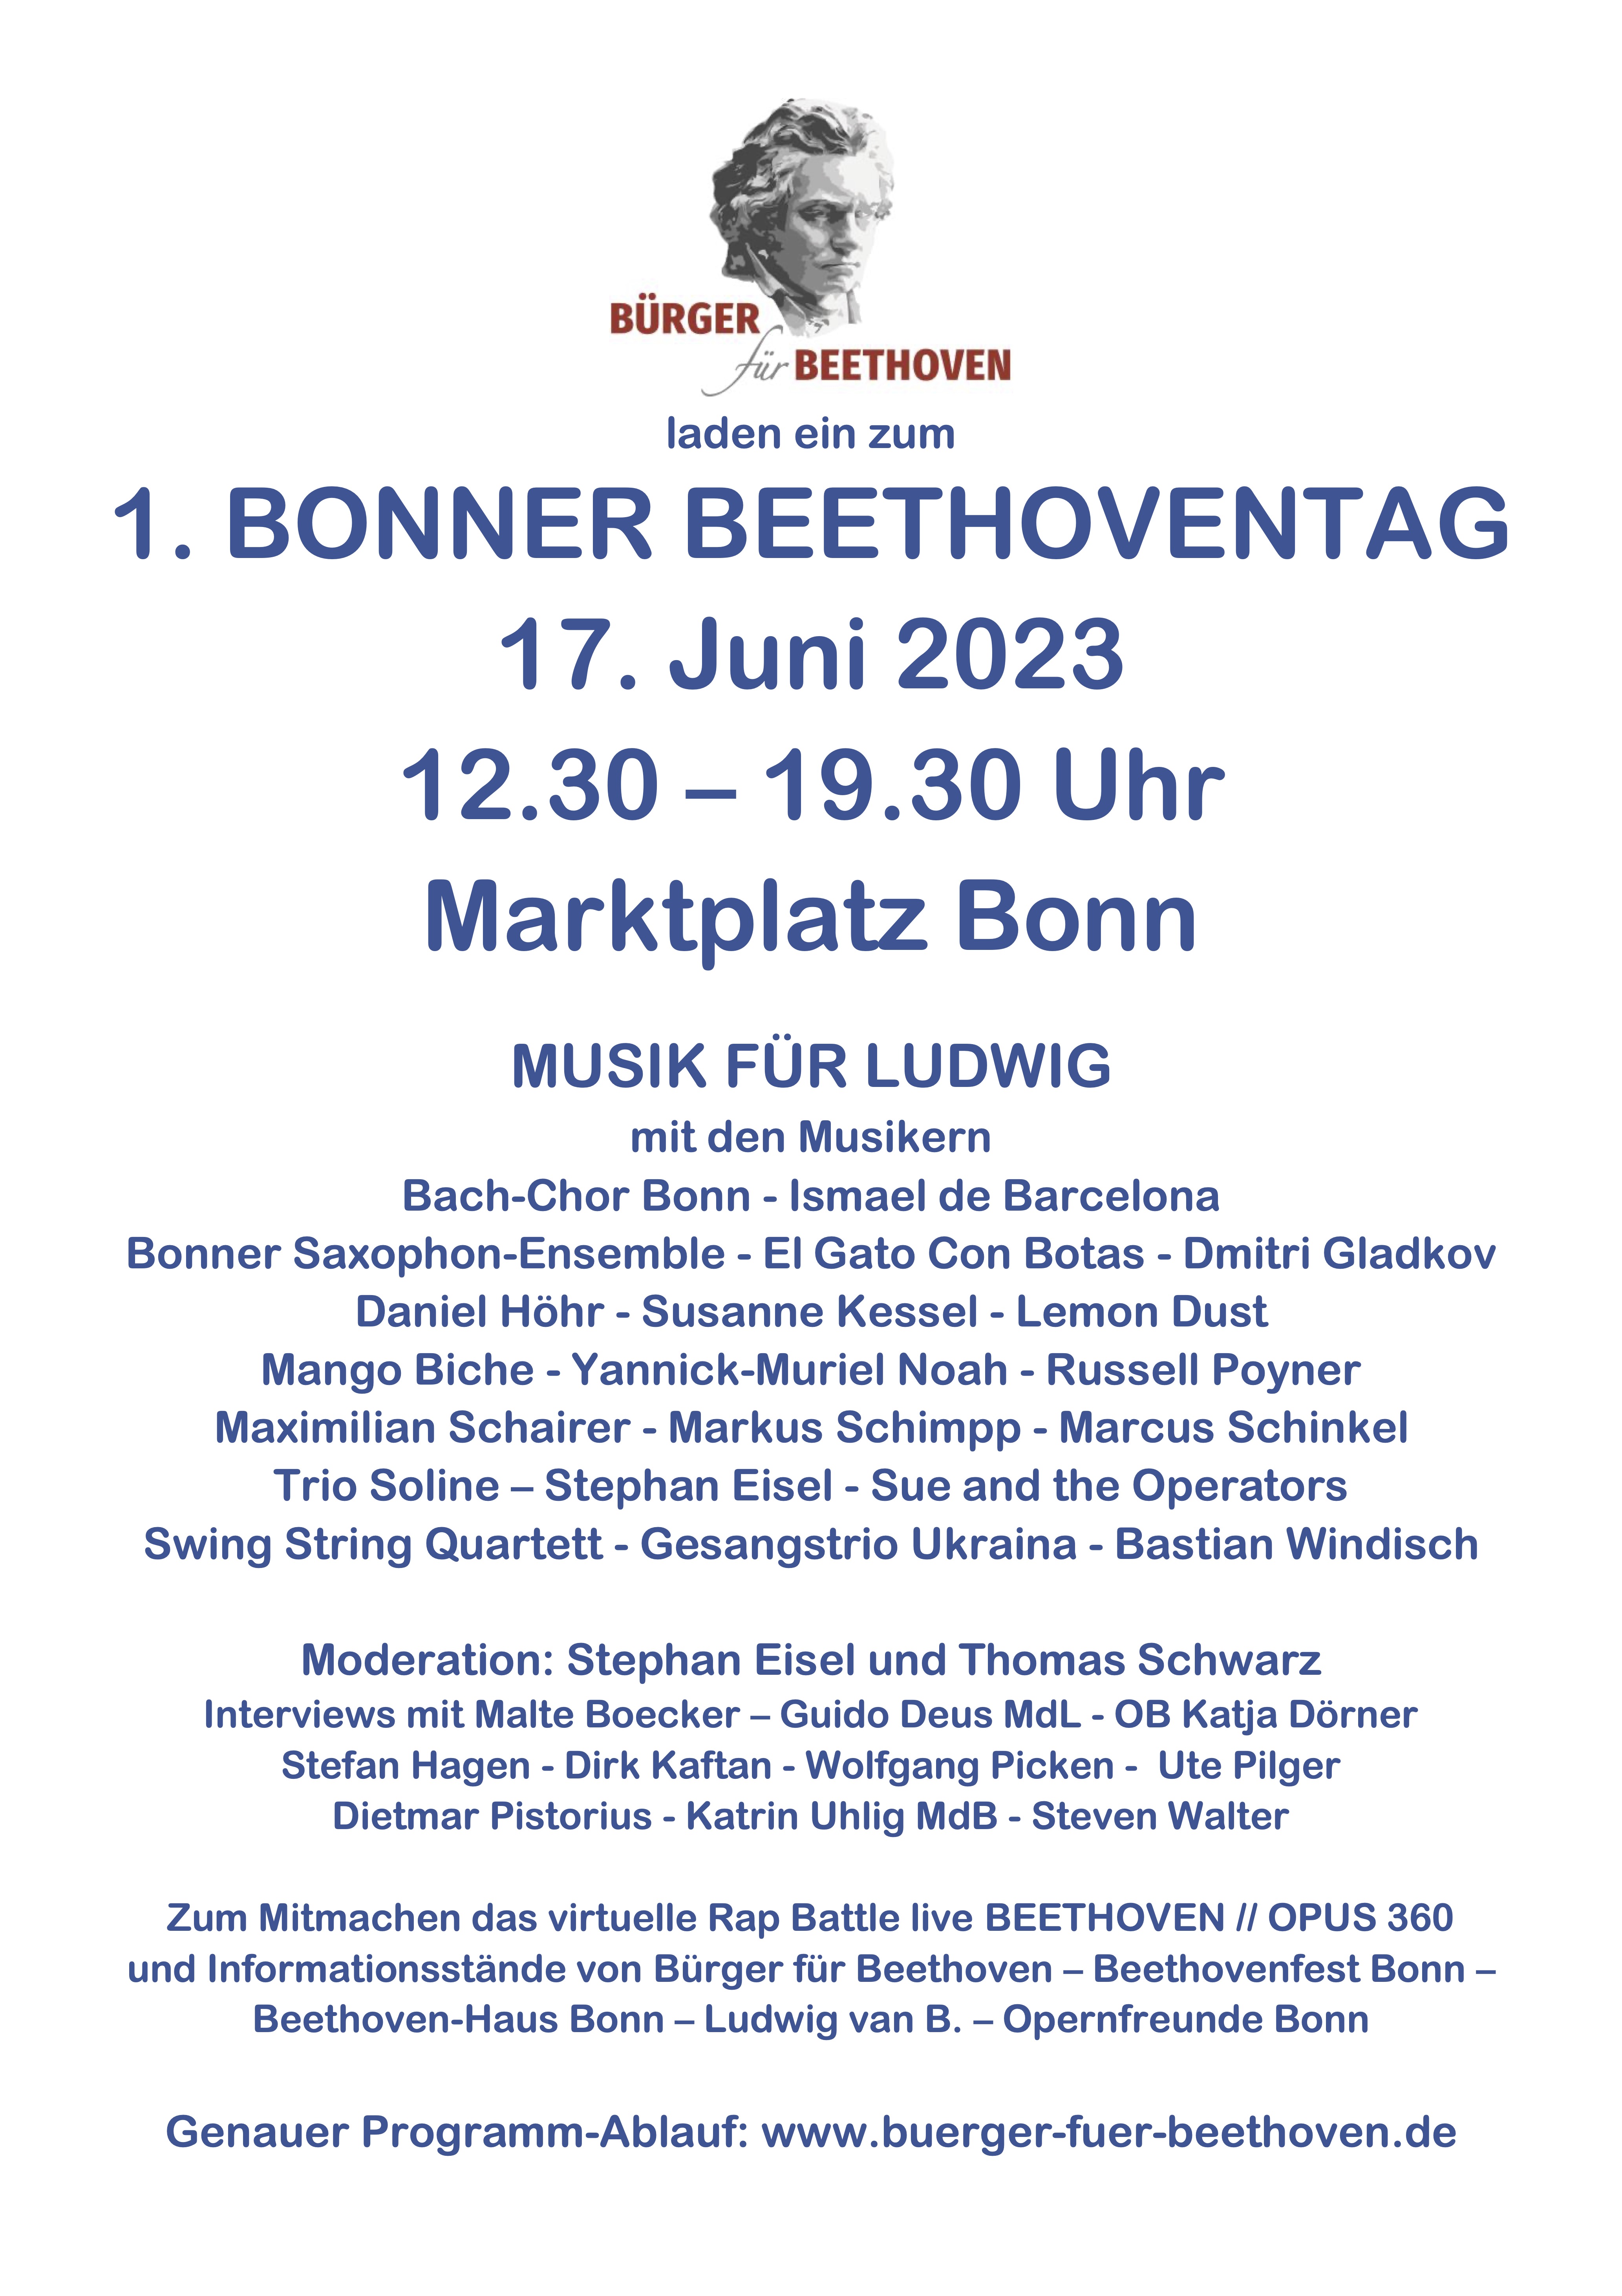 Der 1. Bonner Beethoven-Tag war mit über 50 Musiker